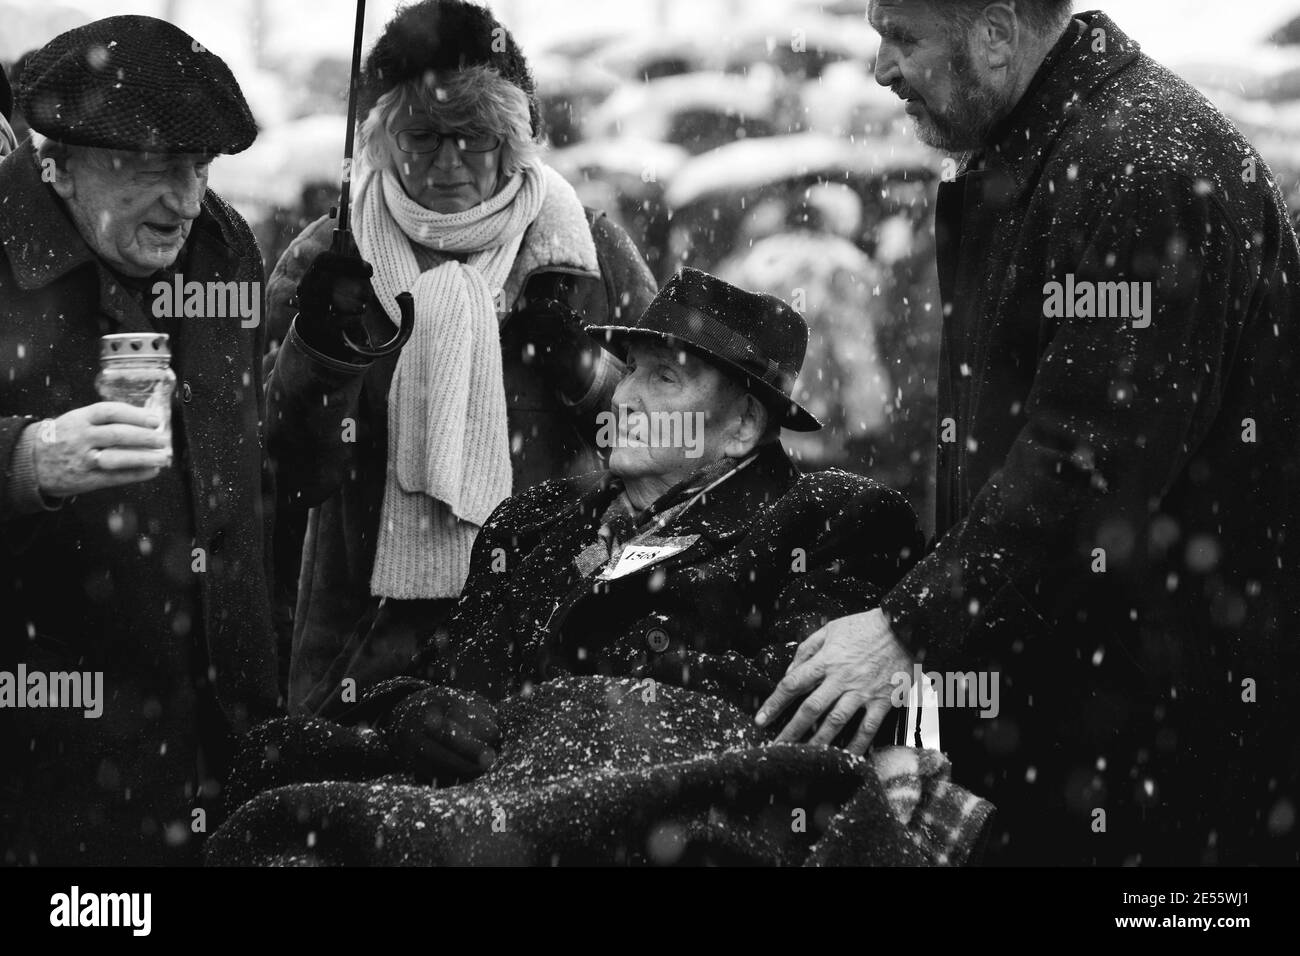 Oswiecim, Polen - 27. Januar 2008: 73. Jahrestag der Befreiung von Auschwitz-Birkenau. Der Überlebende besucht das Vernichtungslager Auschwitz. Stockfoto